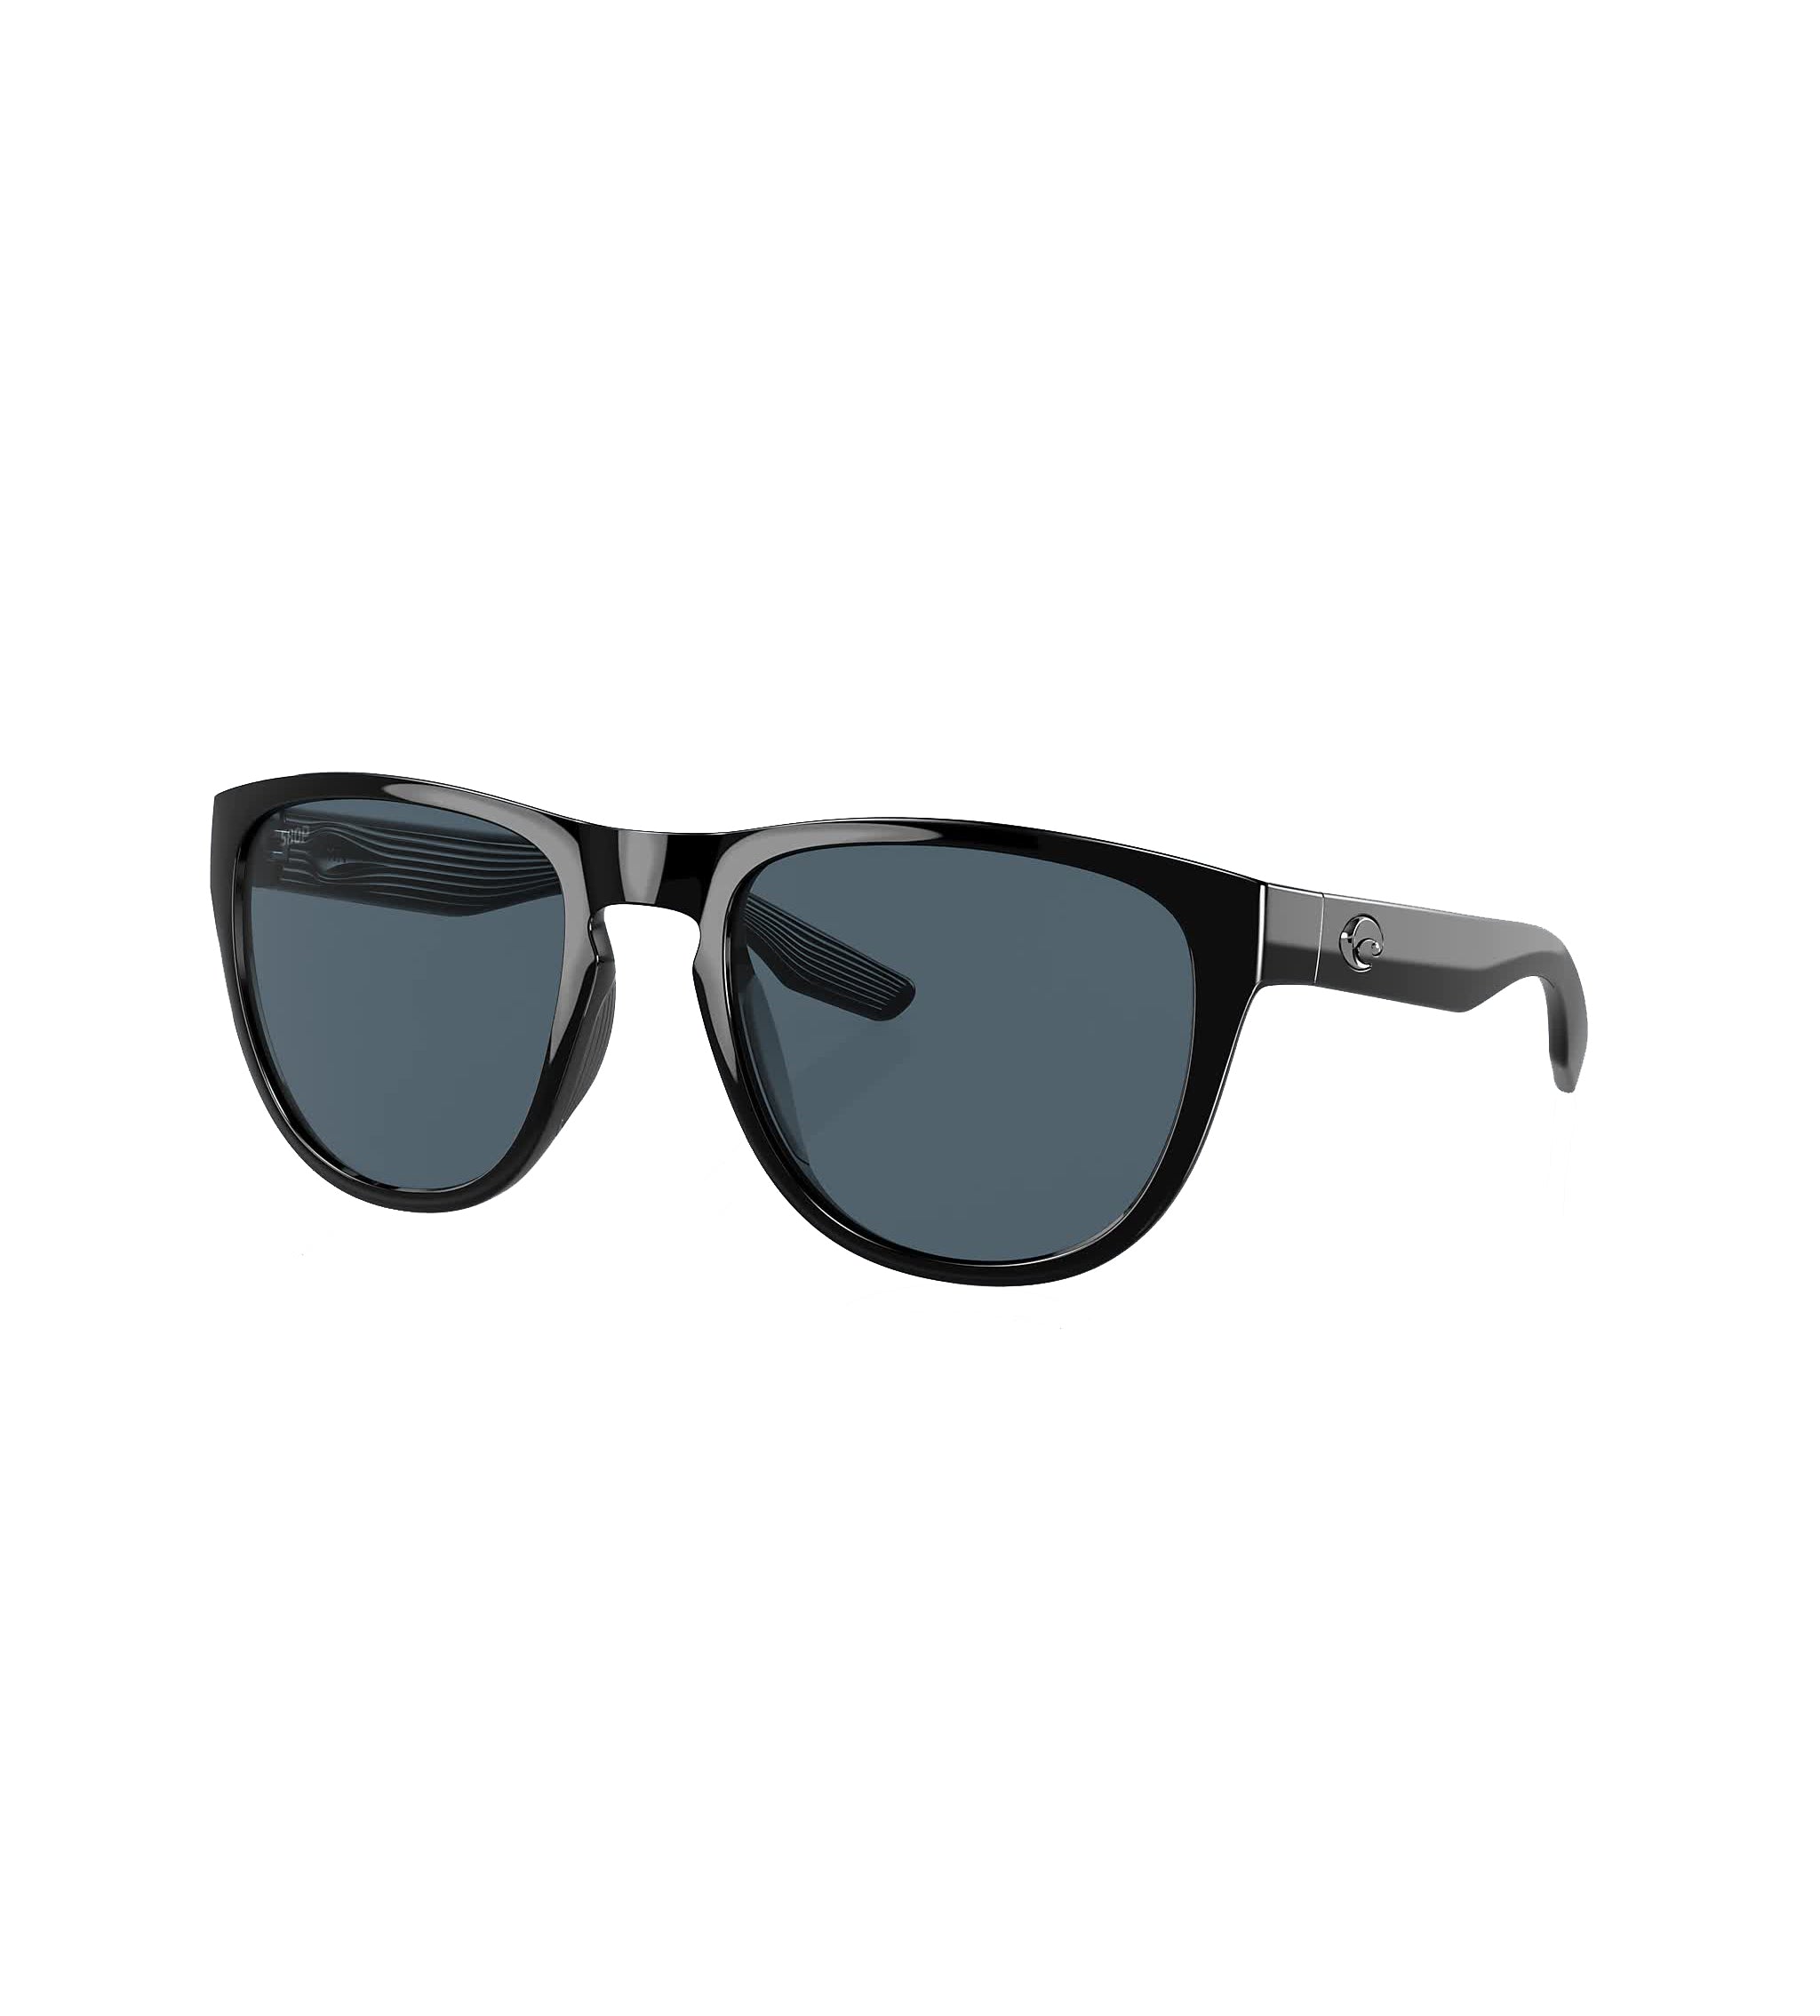 Costa Del Mar Irie Polarized Sunglasses Black Gray580P